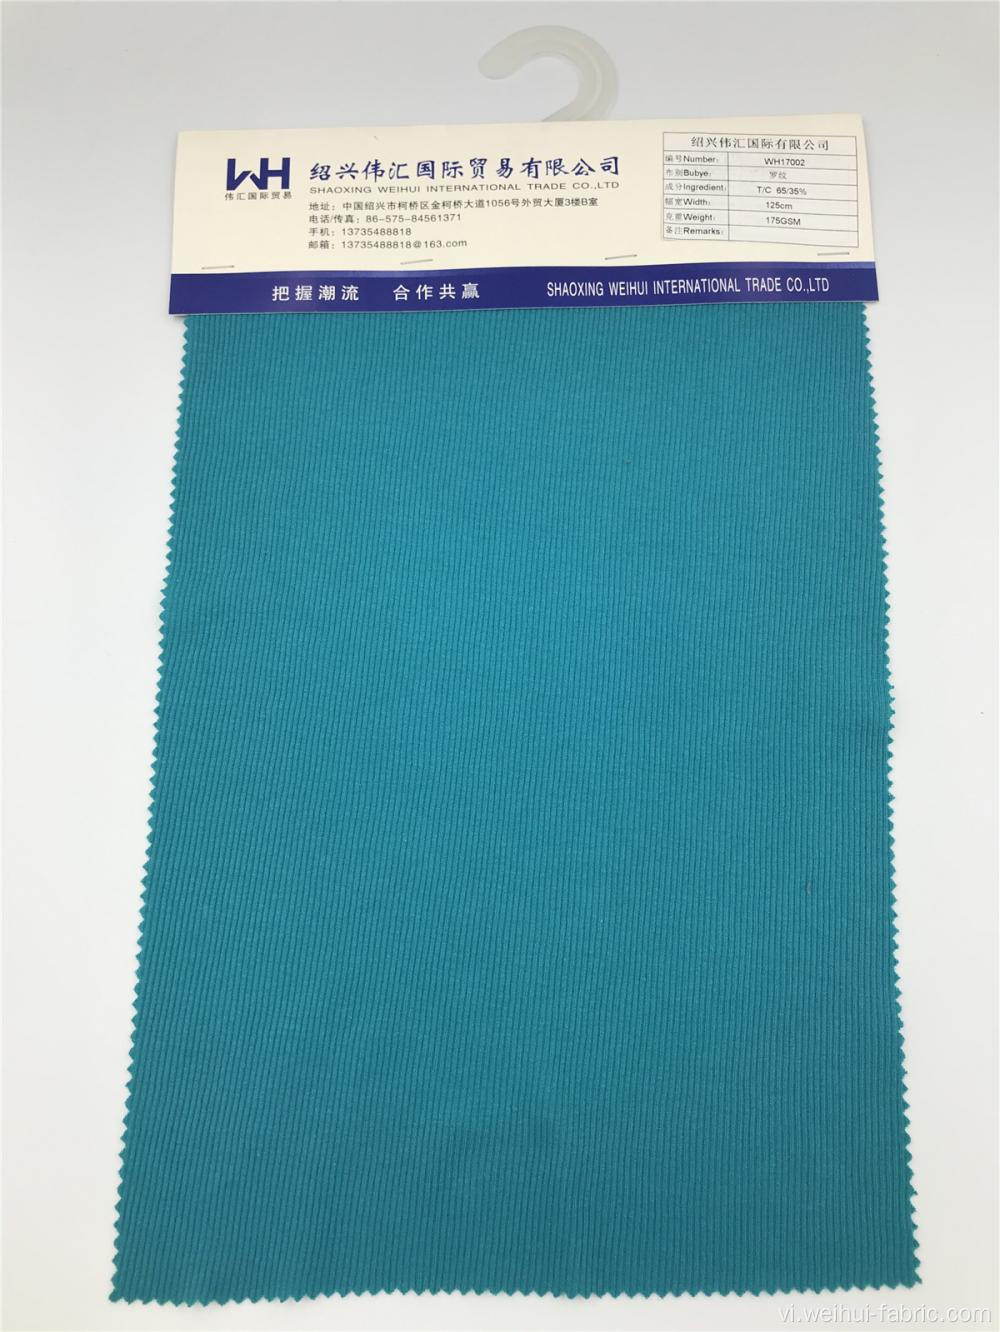 Trọng lượng chất lượng cao 175GSM T / C Vải màu xanh lam